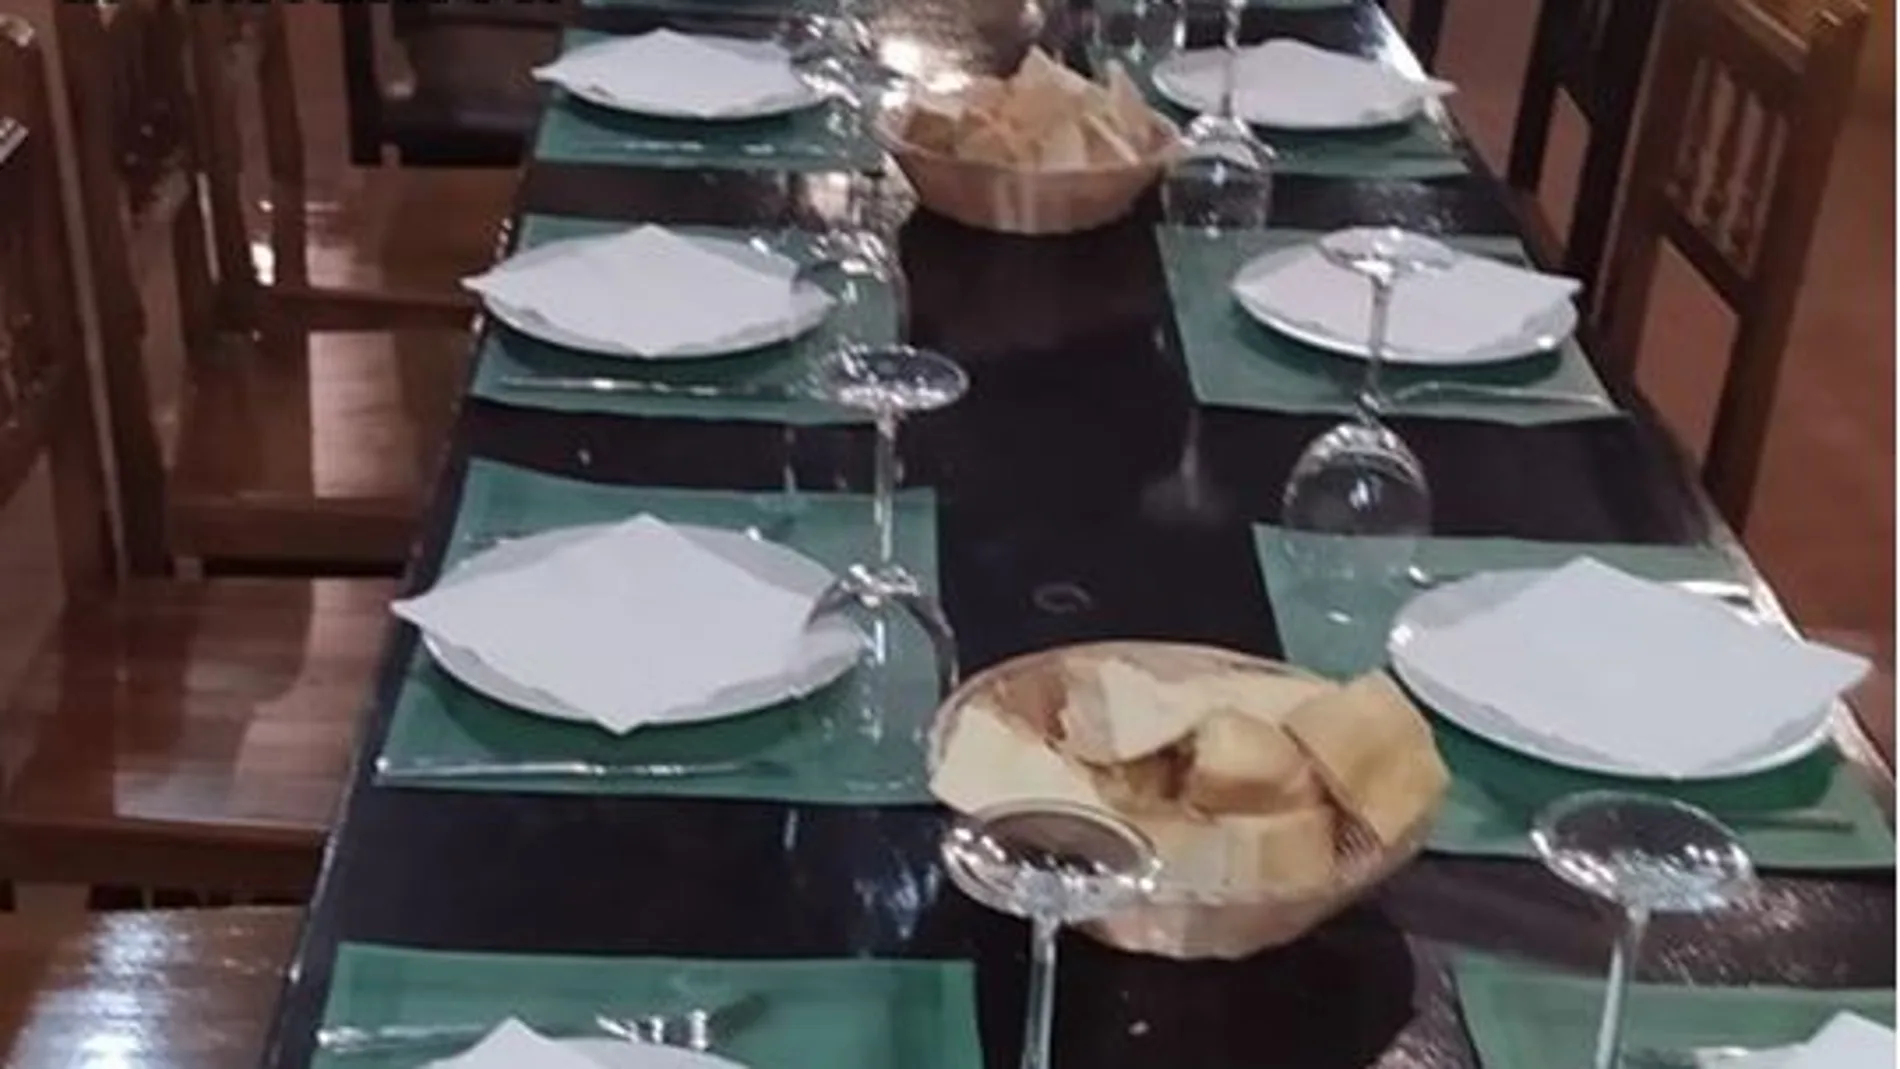 Platas preparados para la celebración de un banquete en una bodega de Boecillo